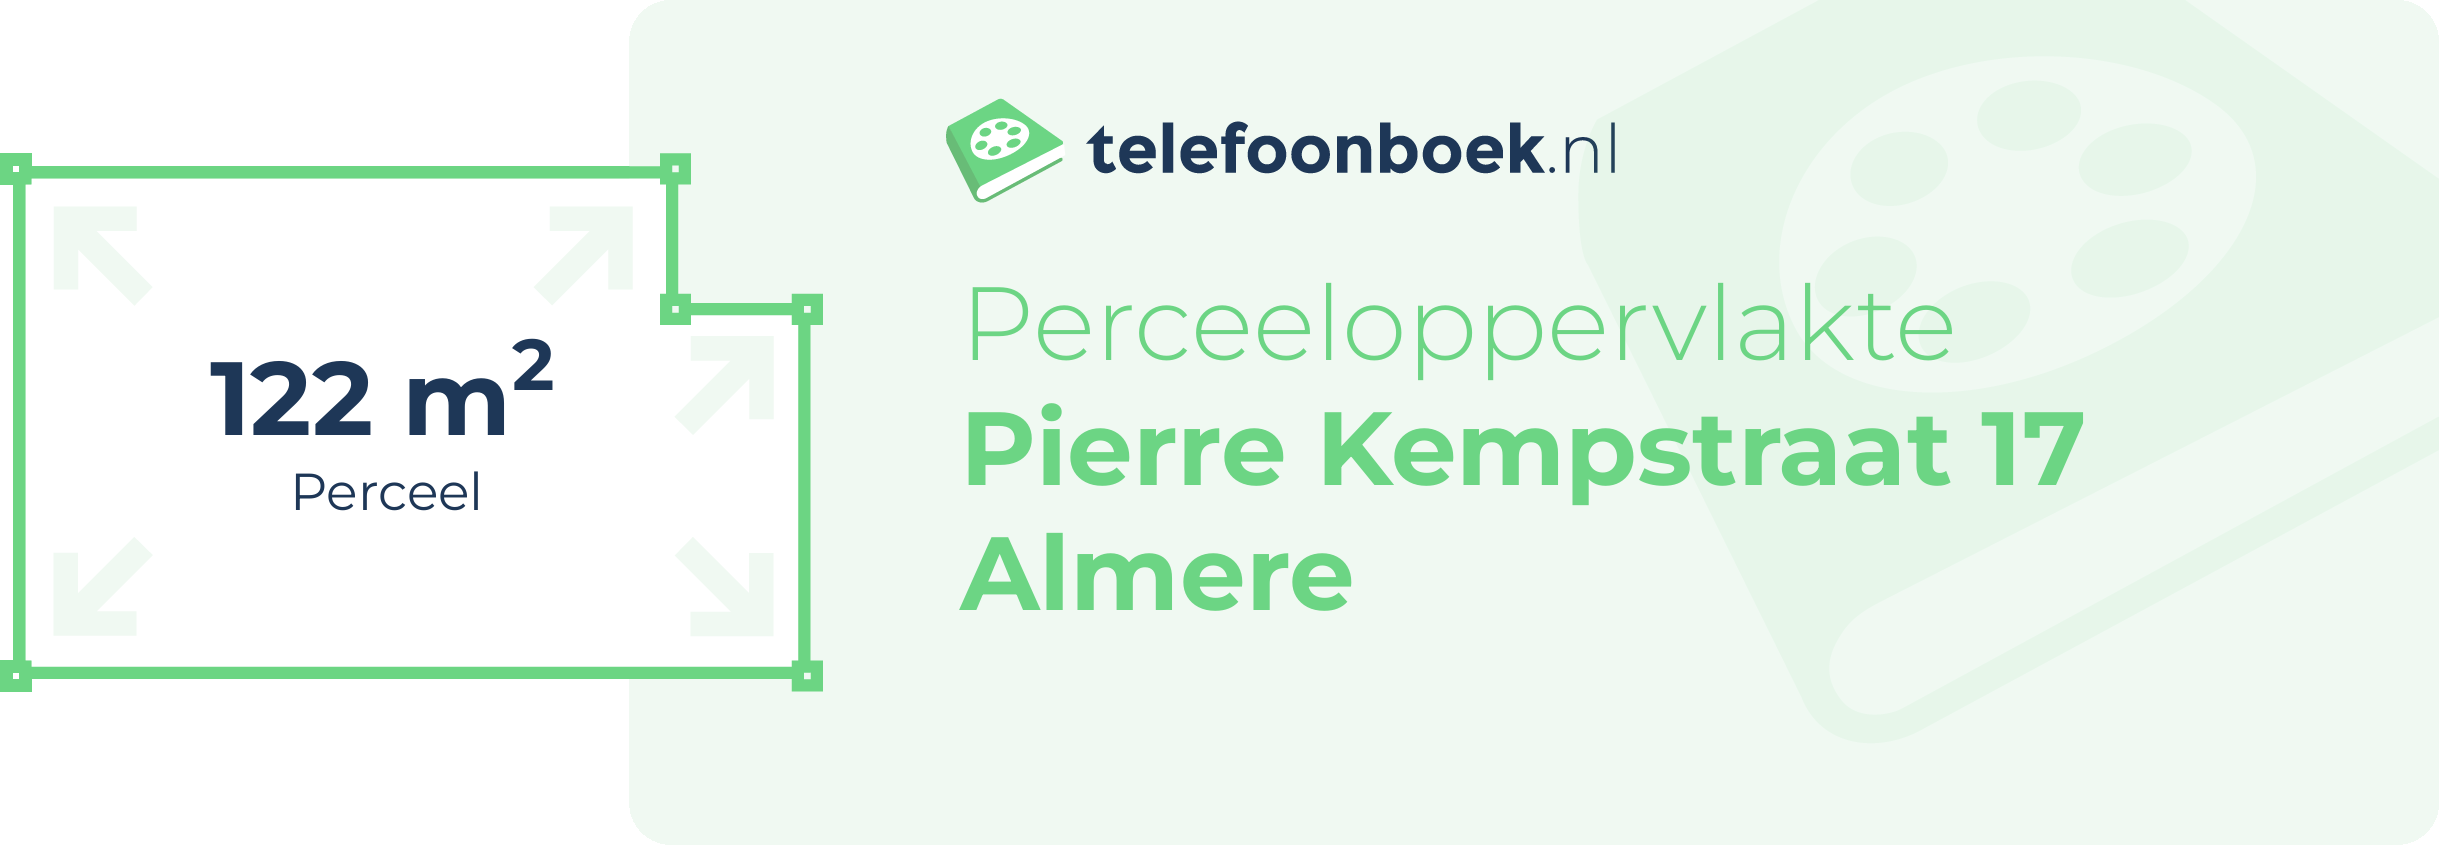 Perceeloppervlakte Pierre Kempstraat 17 Almere